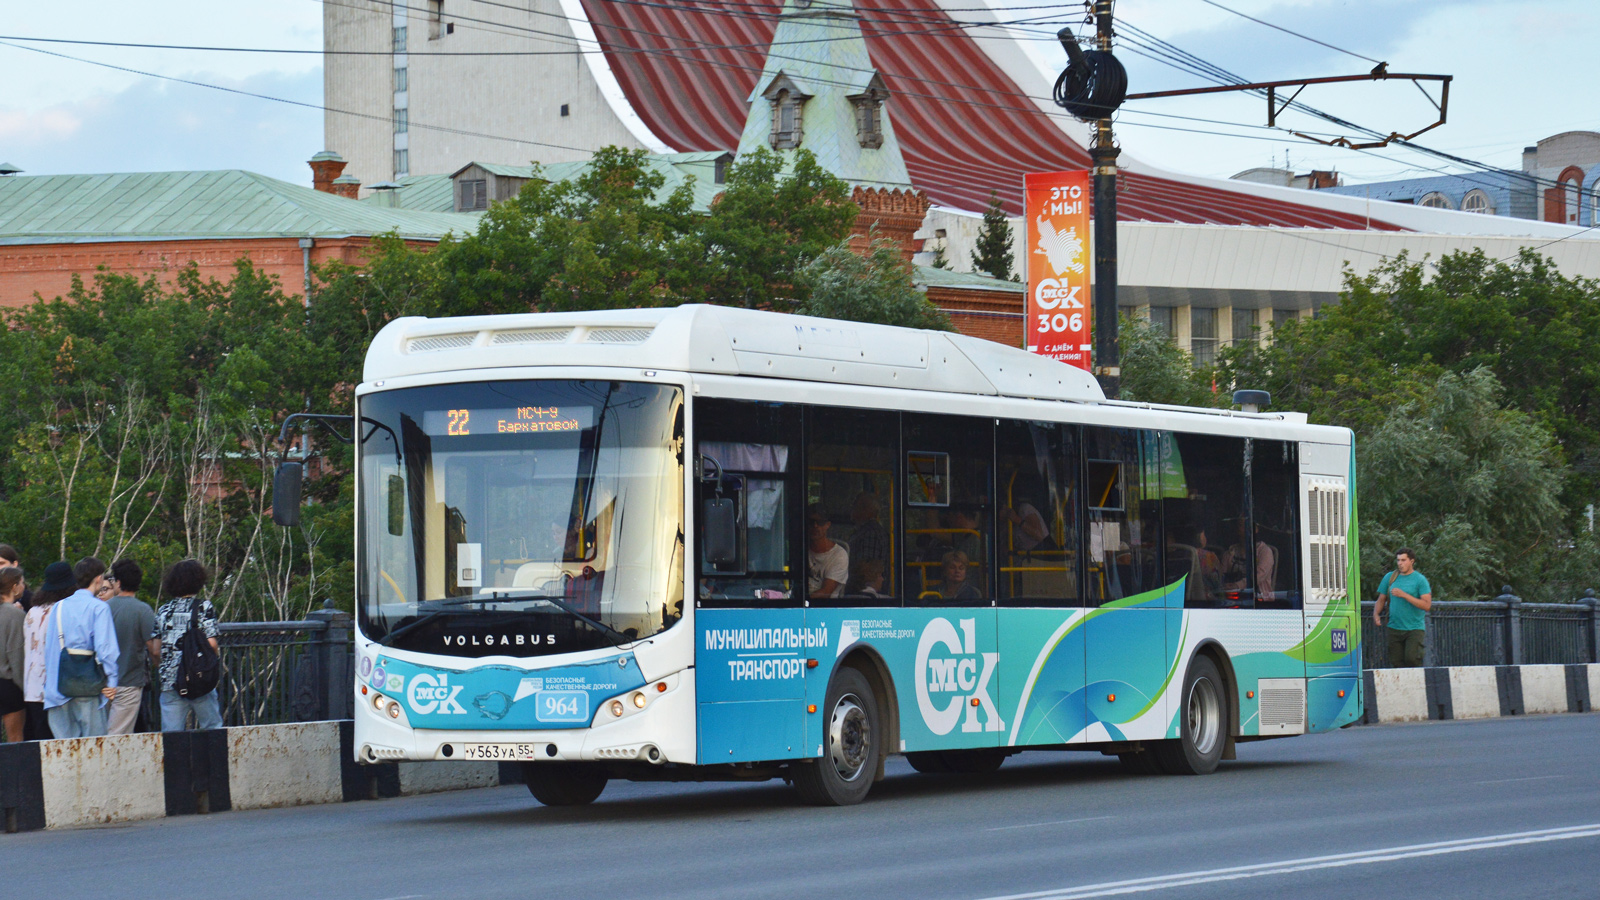 Omsk region, Volgabus-5270.G2 (CNG) Nr. 964